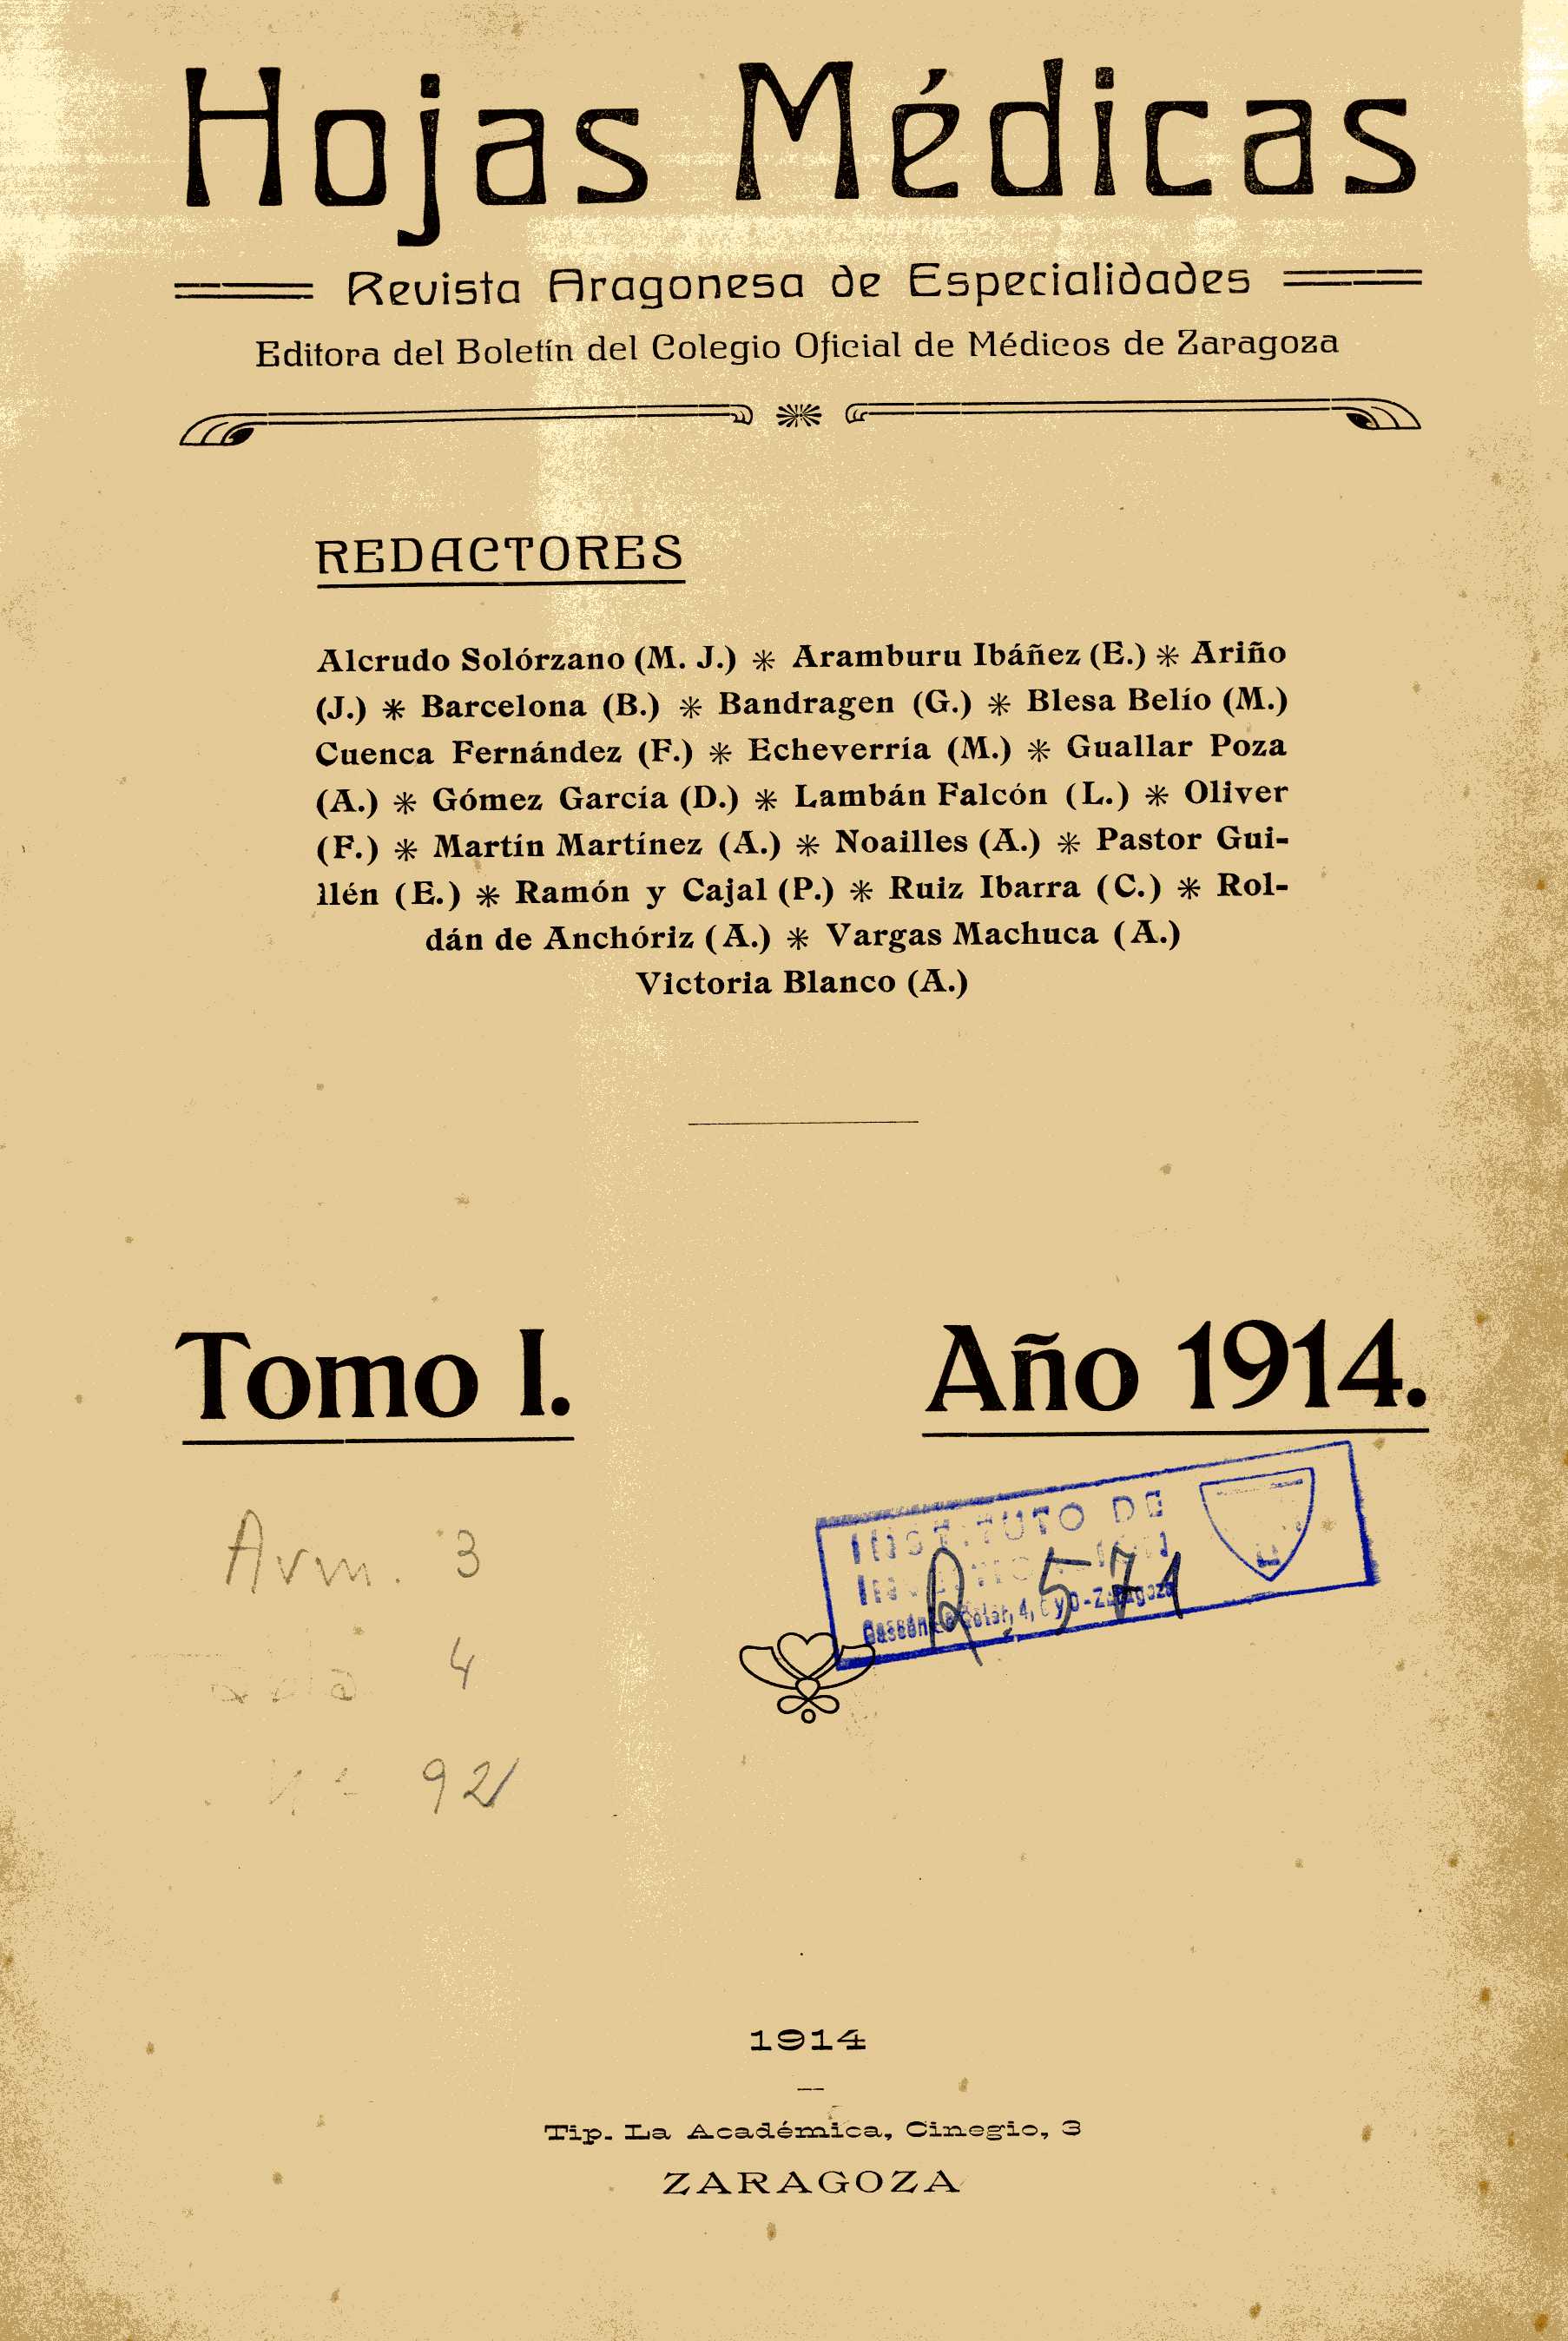 Hojas Médicas. Revista aragonesa de especialidades, Tomo 1, I (1914)